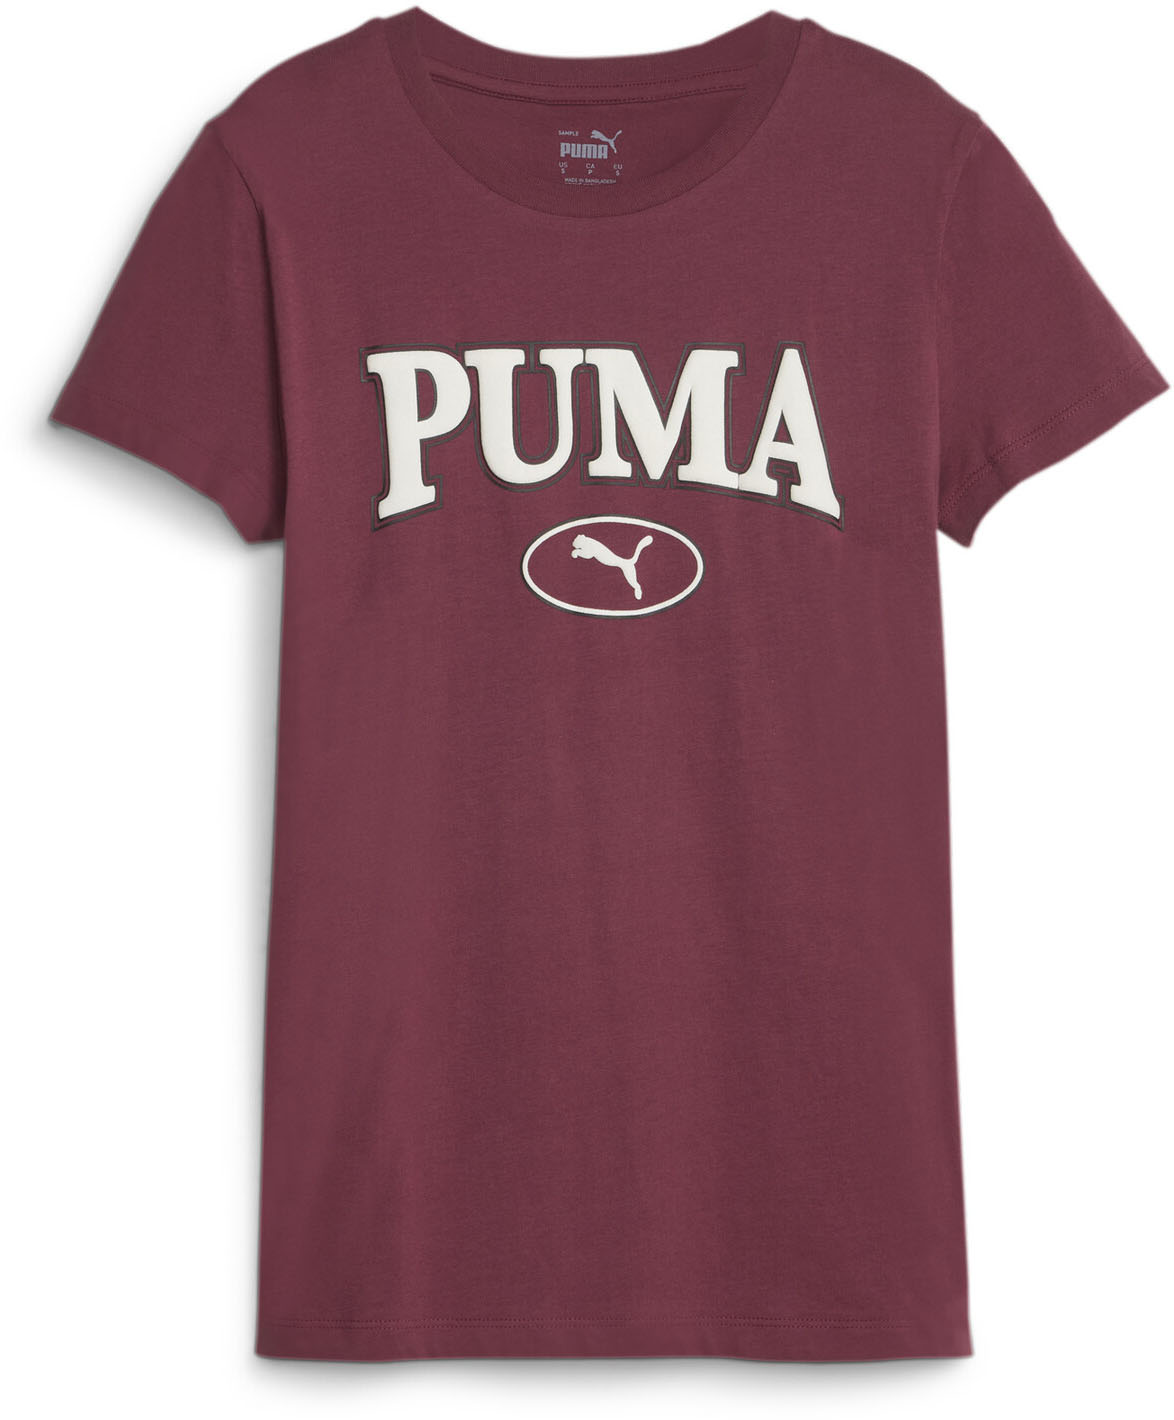 Puma - Womens Puma Squad Graphic Us T-Shirt